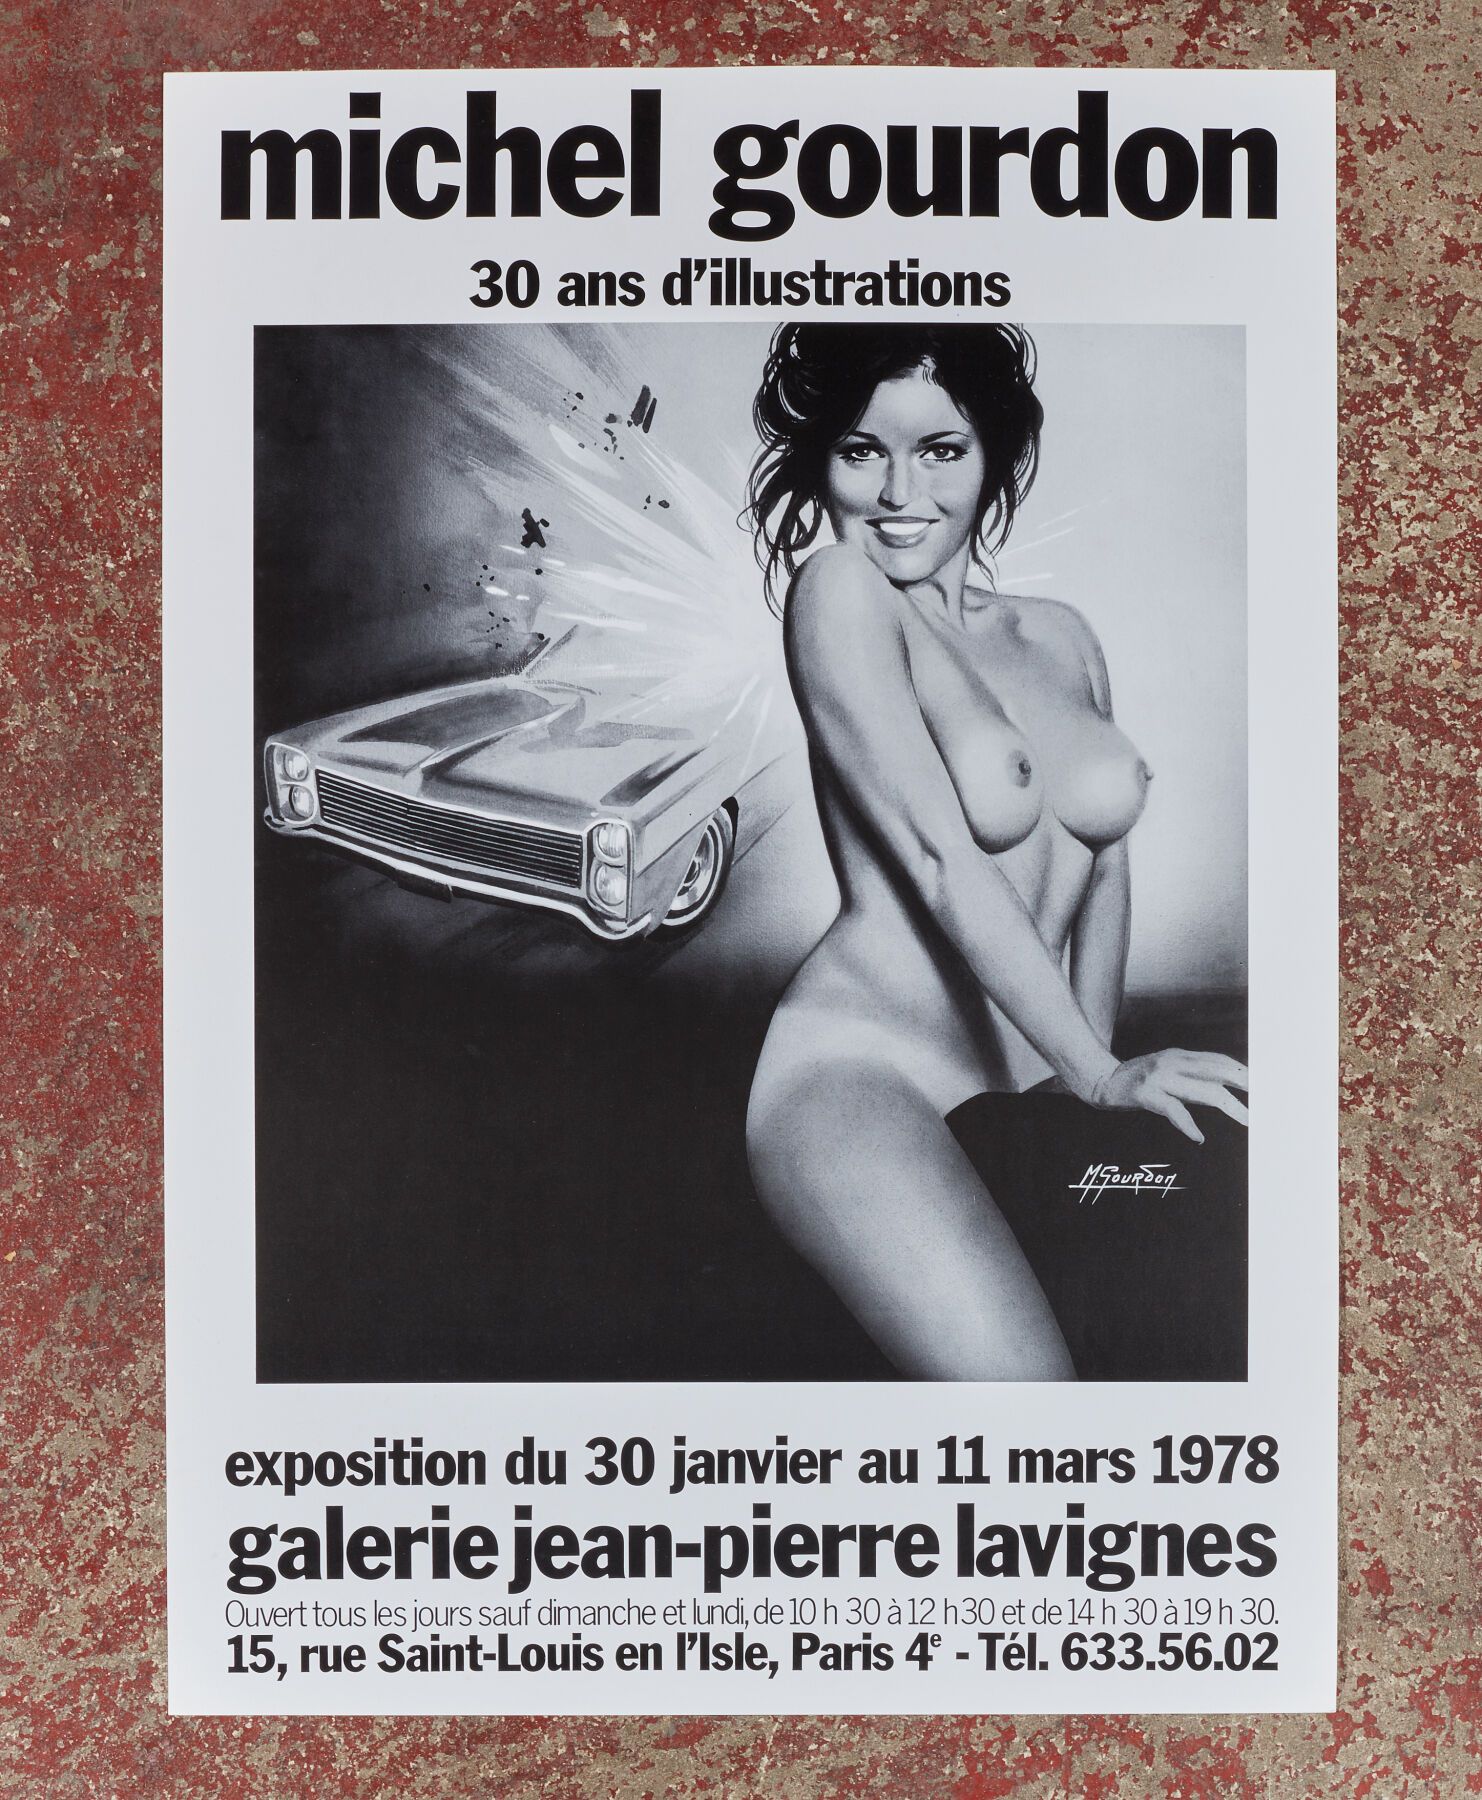 Null Michel GOURDON (1925 - 2011).
30 anni di illustrazioni - 1978?
Manifesto pe&hellip;